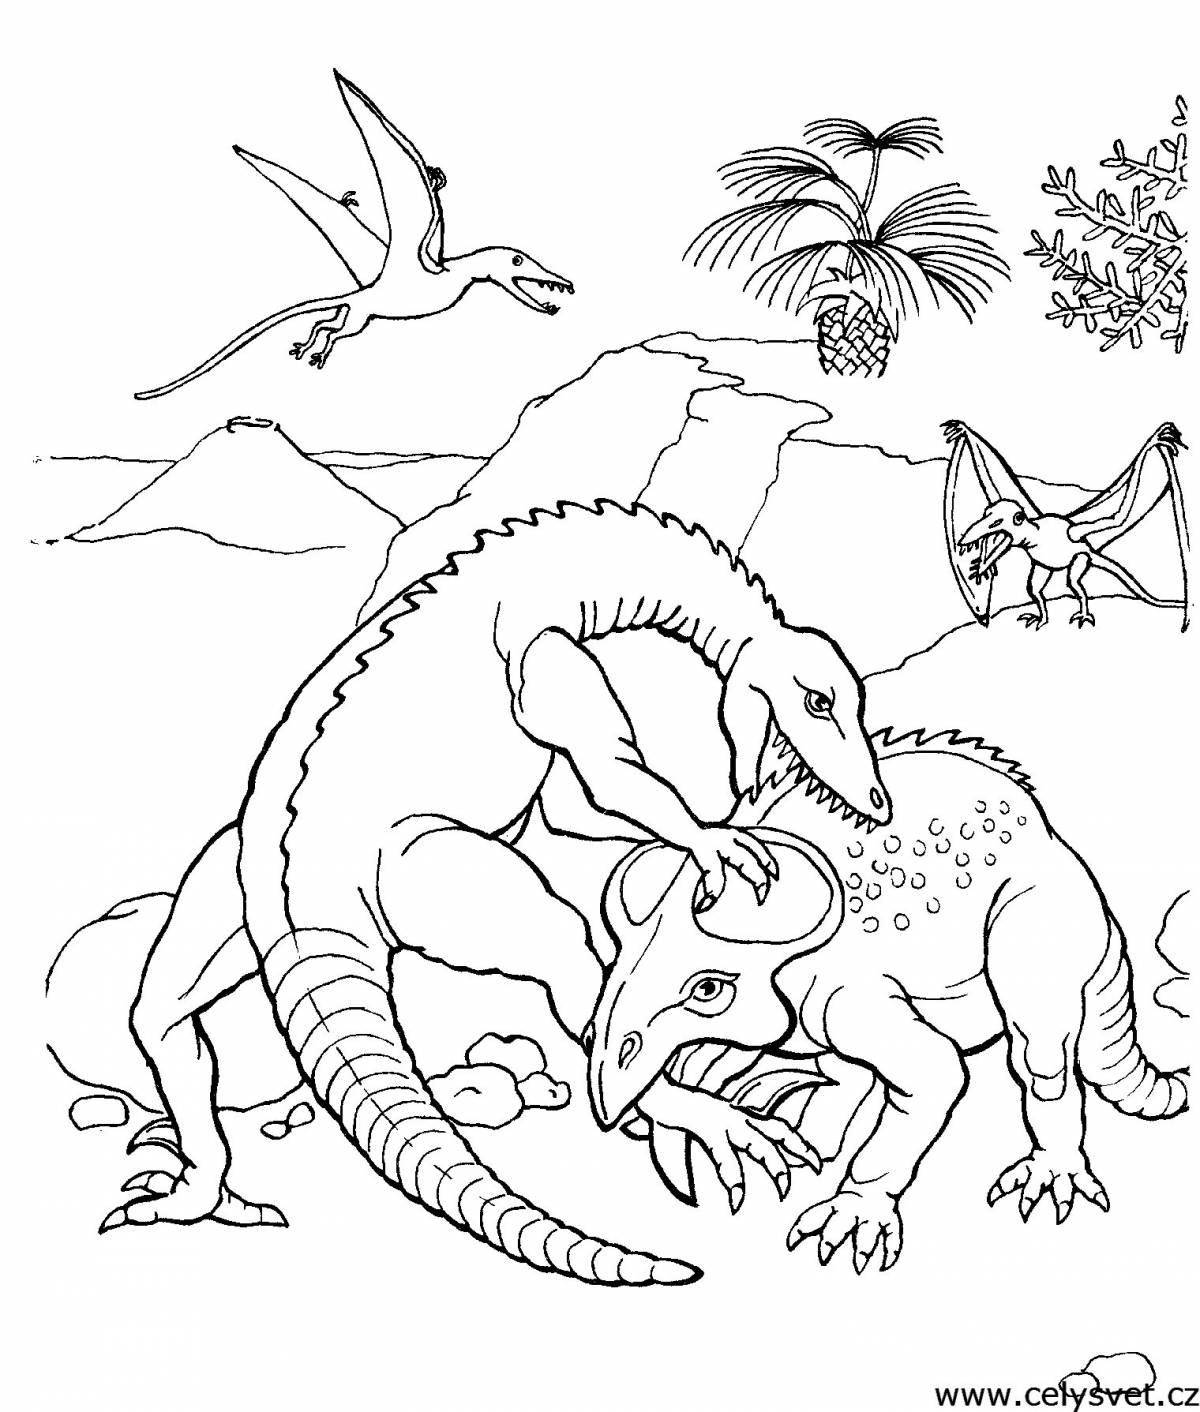 Эскиз интенсивной битвы с динозаврами